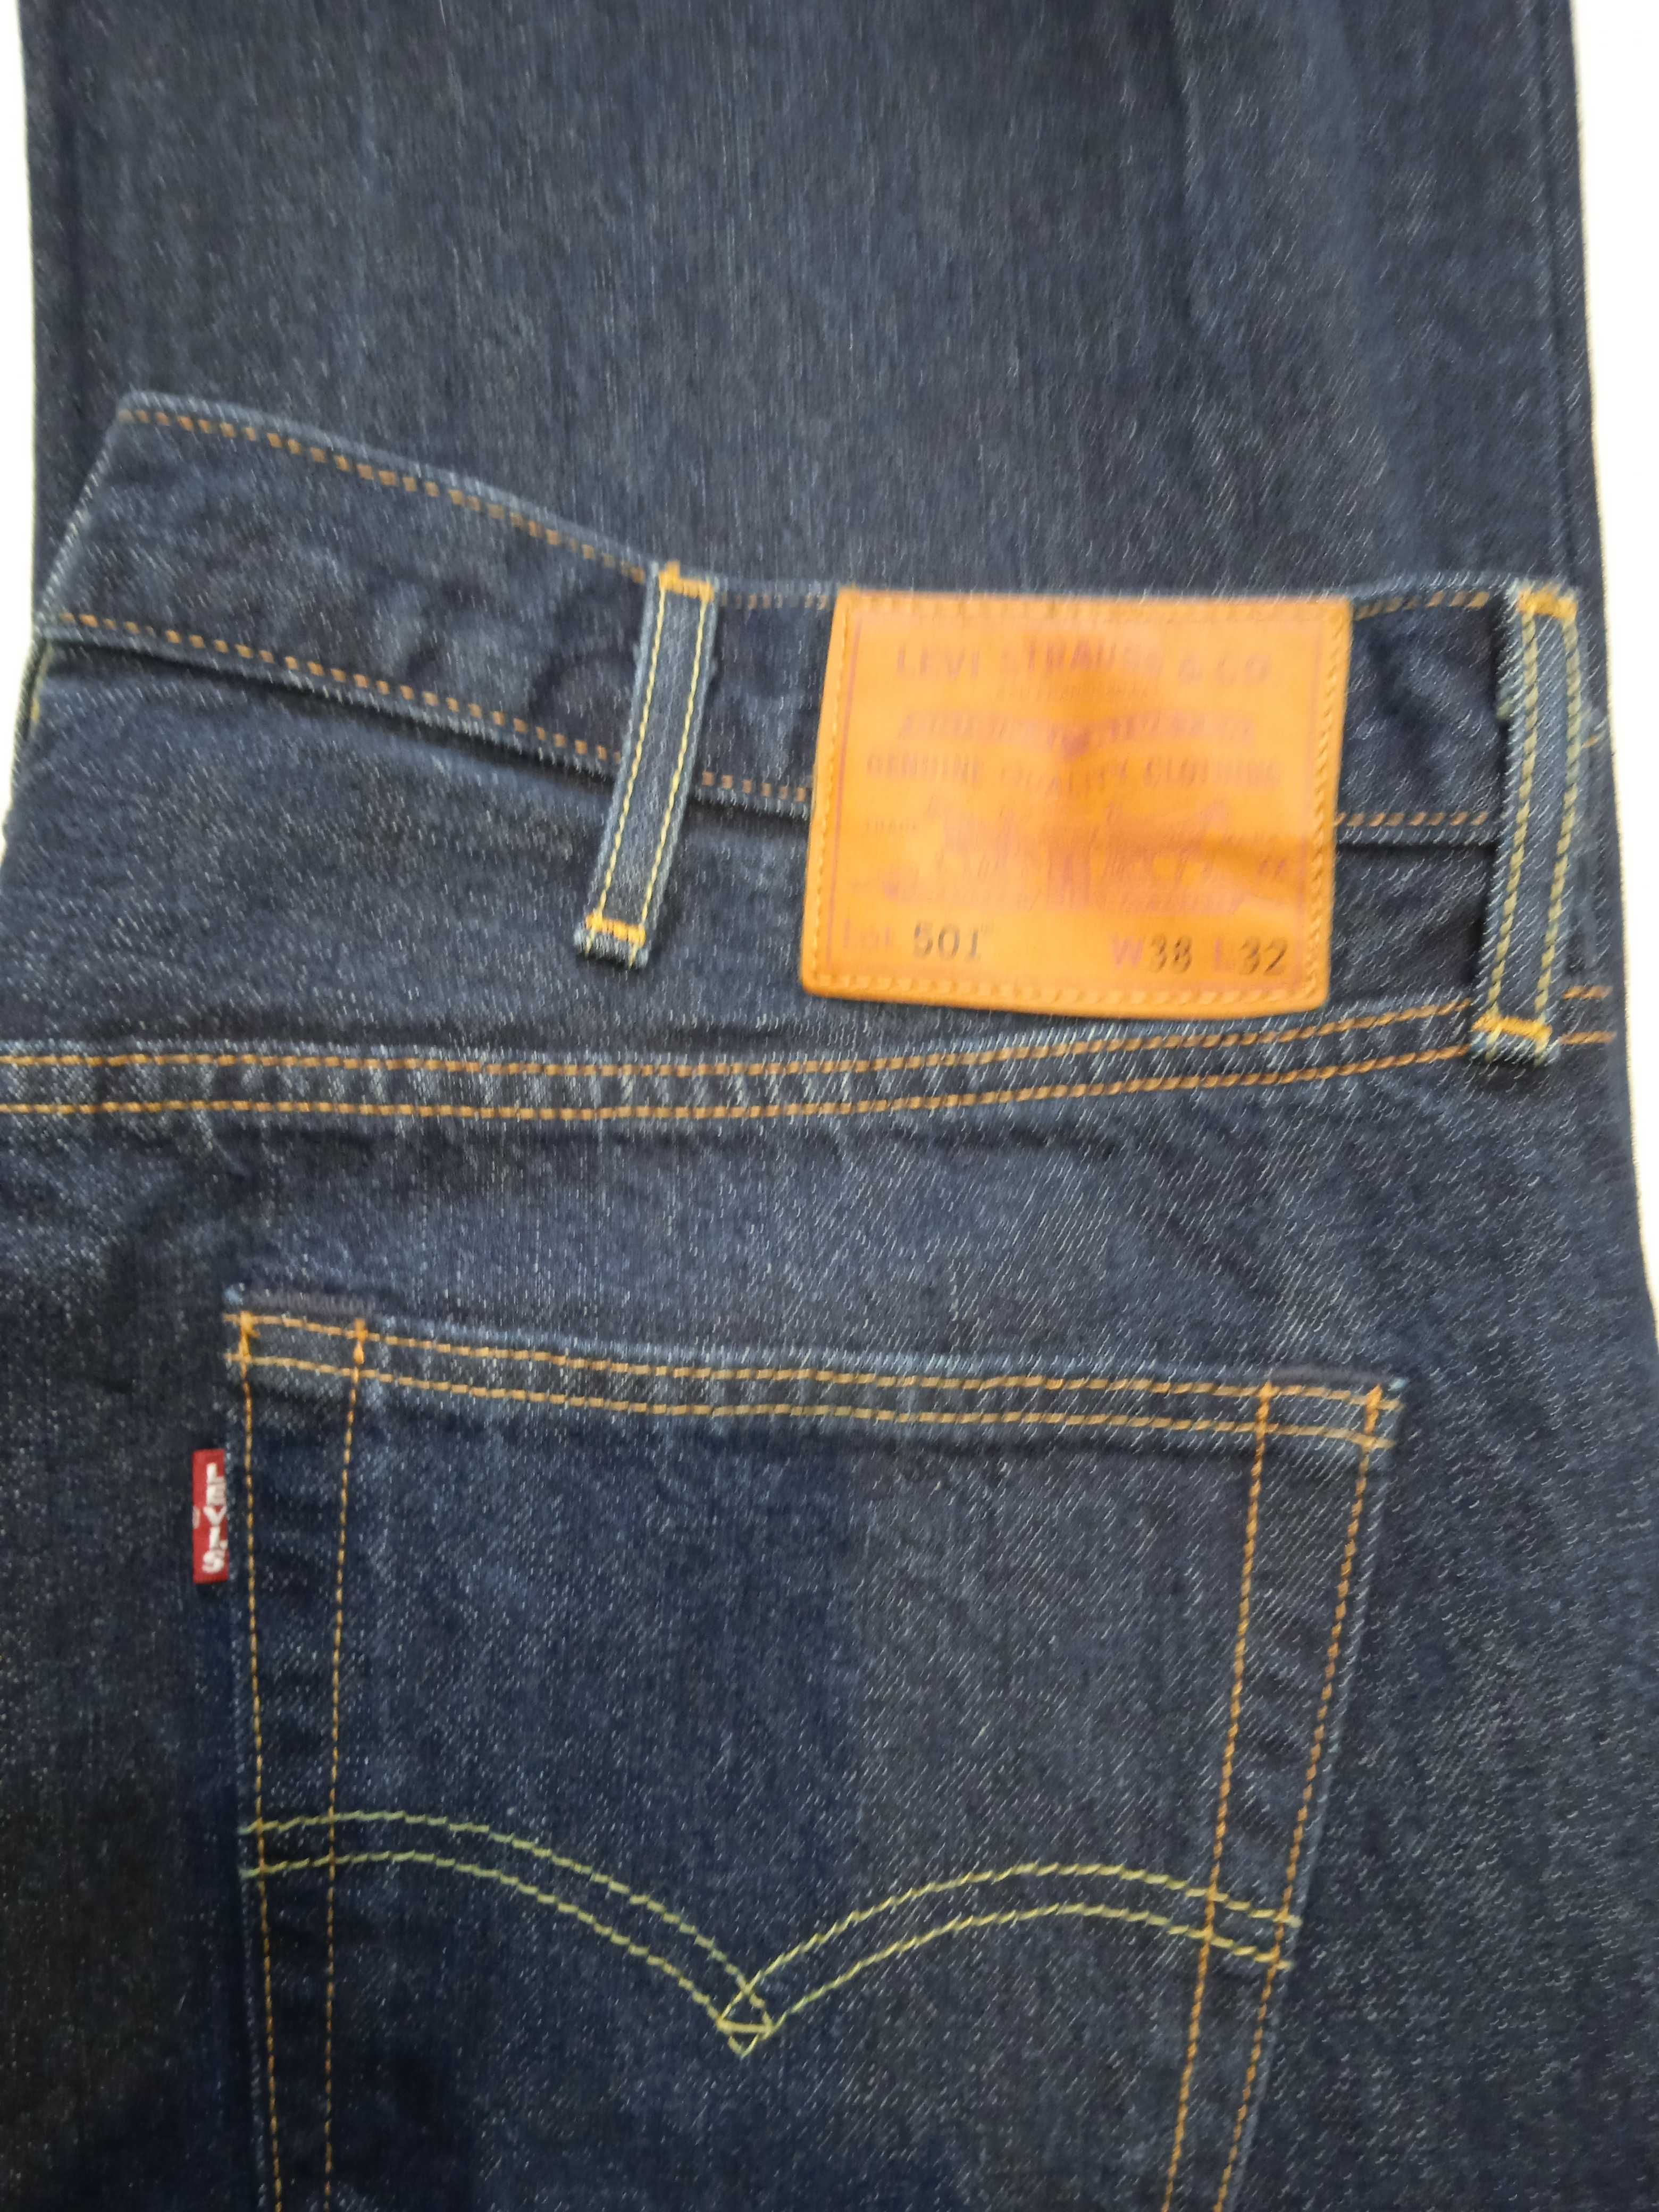 Levis 501 Premium Nowe spodnie jeansy W38 L32 SuperCena!